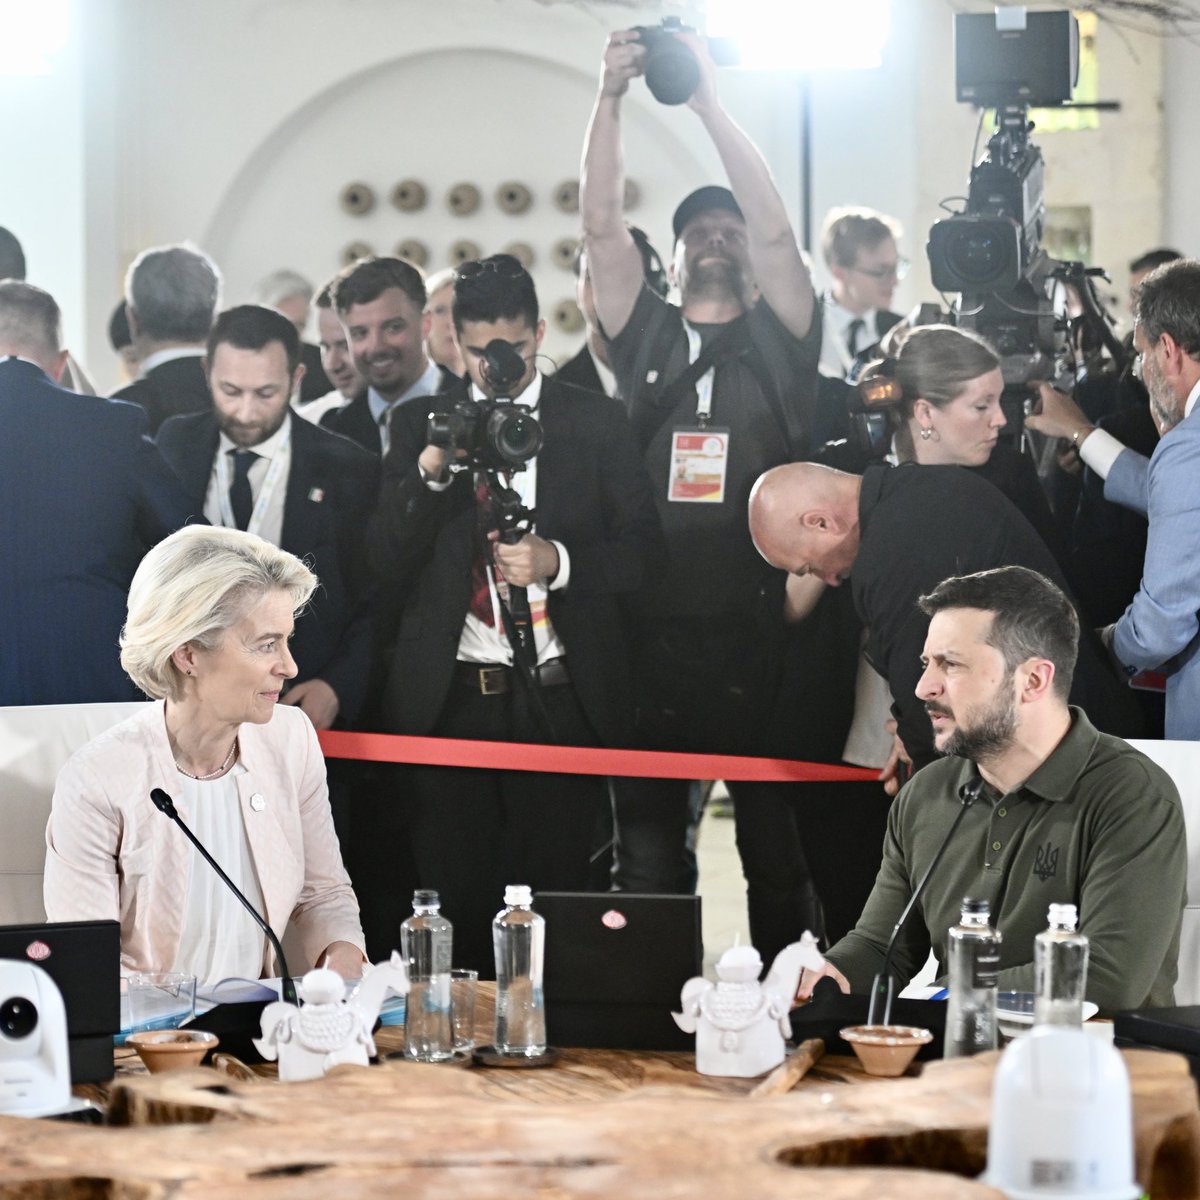 Ursula von der Leyen: De G7 heeft ermee ingestemd Oekraïne tegen het einde van het jaar leningen te verstrekken ter waarde van ongeveer 50 miljard dollar. We zullen de meevallers uit de Russische staatsobligaties gebruiken om deze terug te betalen. Dit bouwt voort op het optreden van de EU, waarbij we deze onverwachte winsten al naar de defensie en wederopbouw van Oekraïne sturen